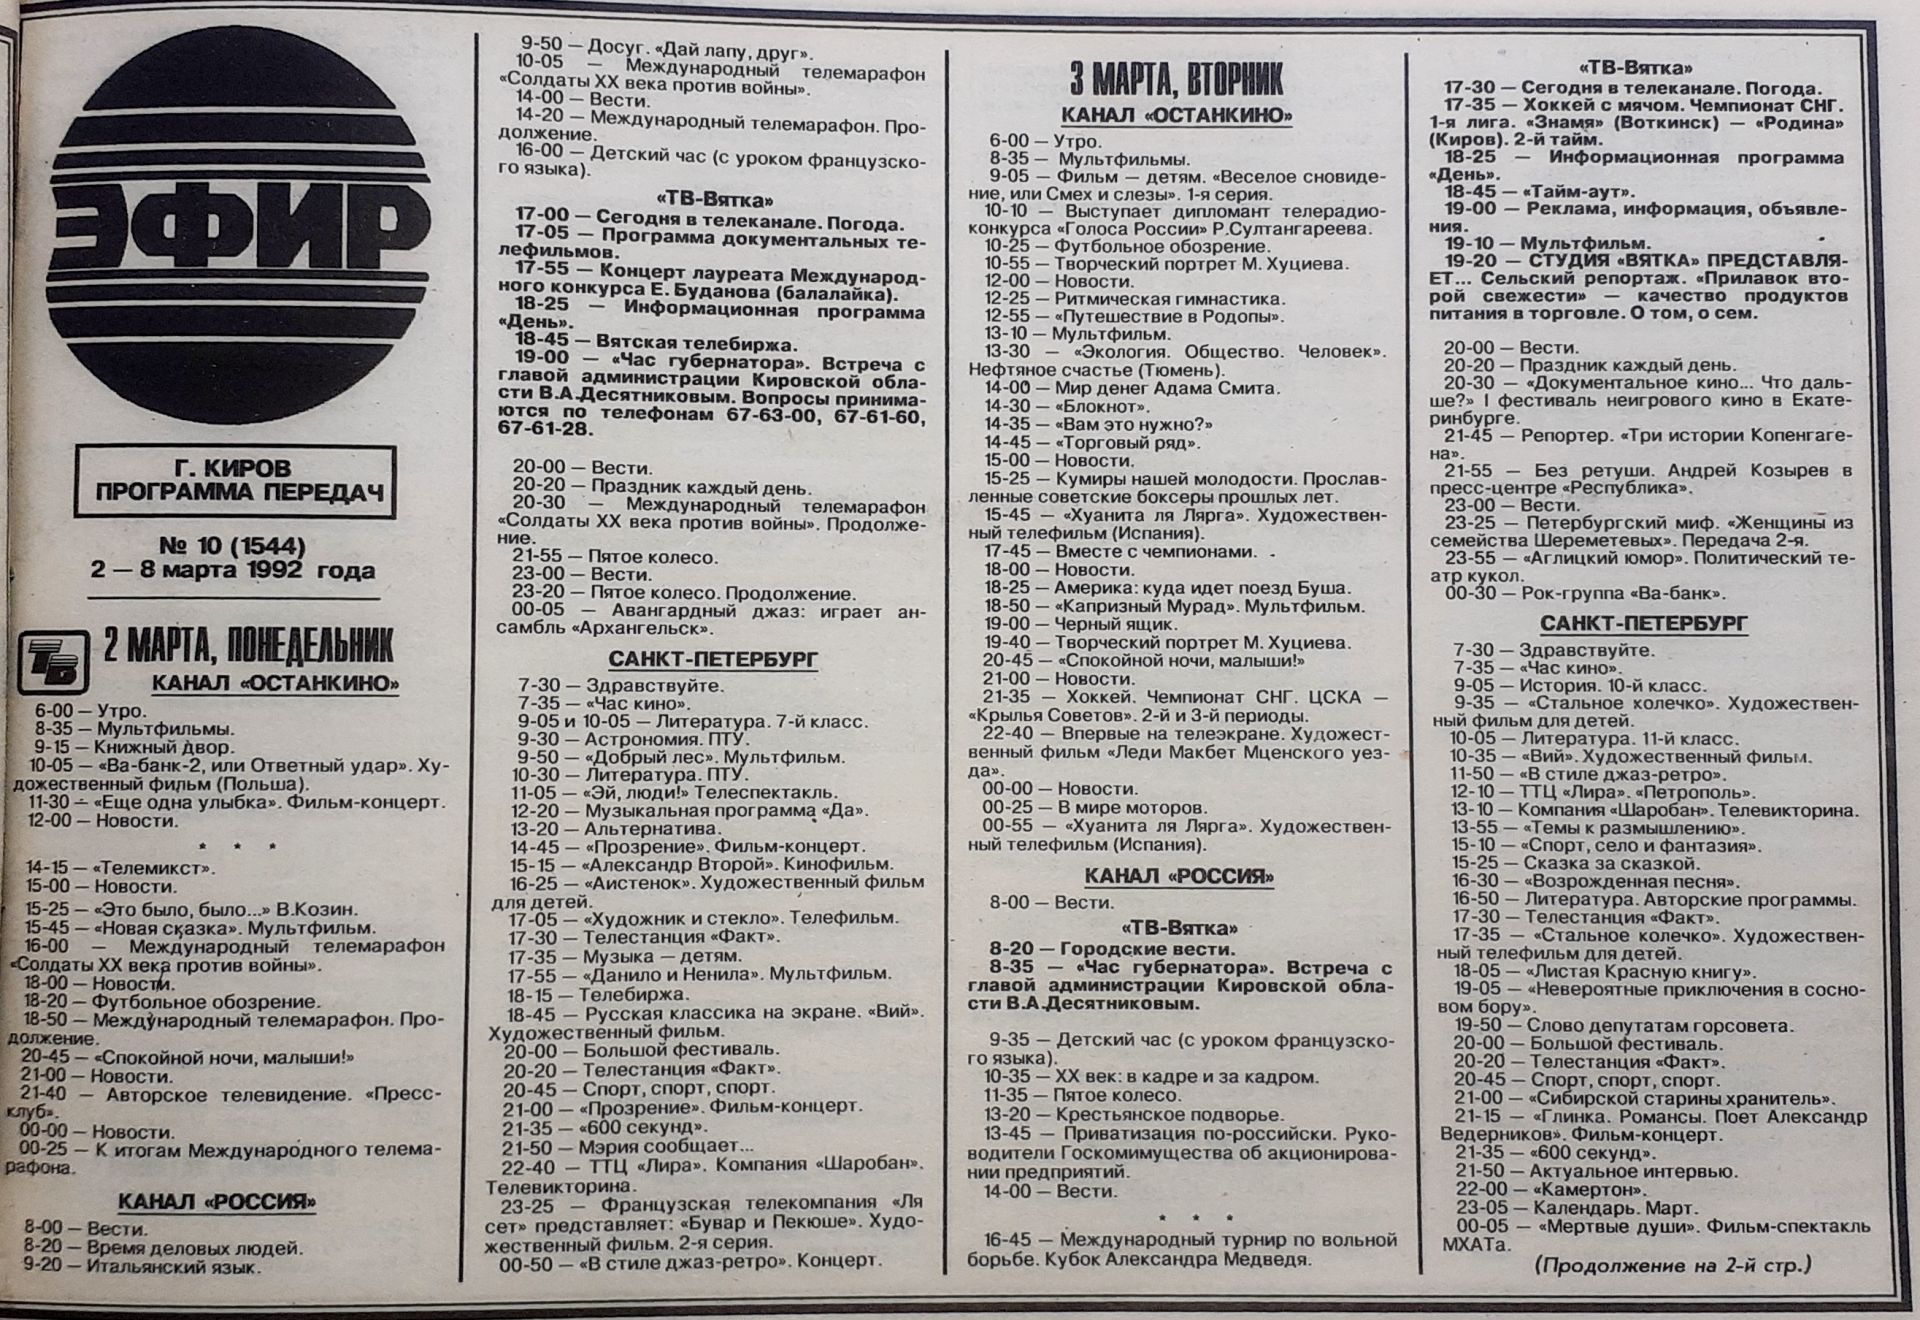 Телепрограмма мир на вечер. Программа телепередач. Программа телепередач 1992 года. Программа на 1992 год. Название телепередач.